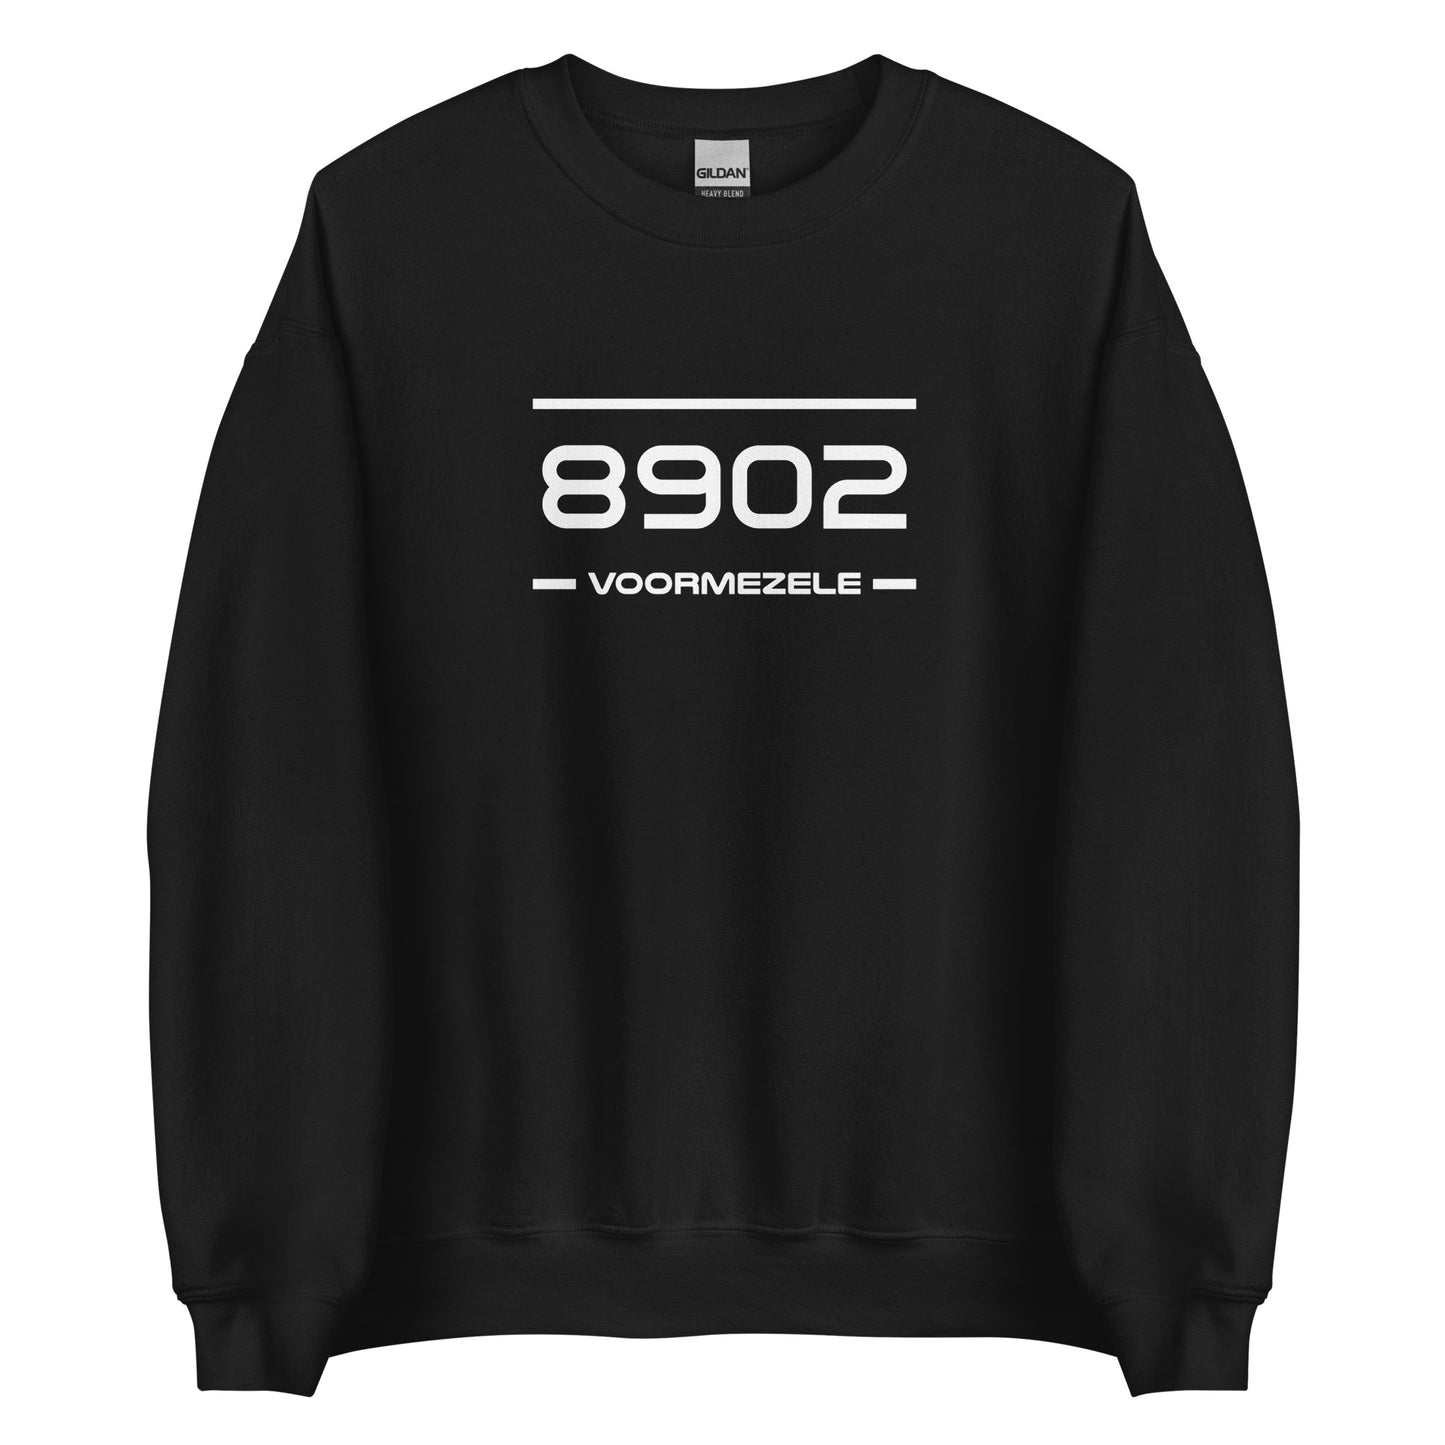 Sweater - 8902 - Voormezele (M/V)